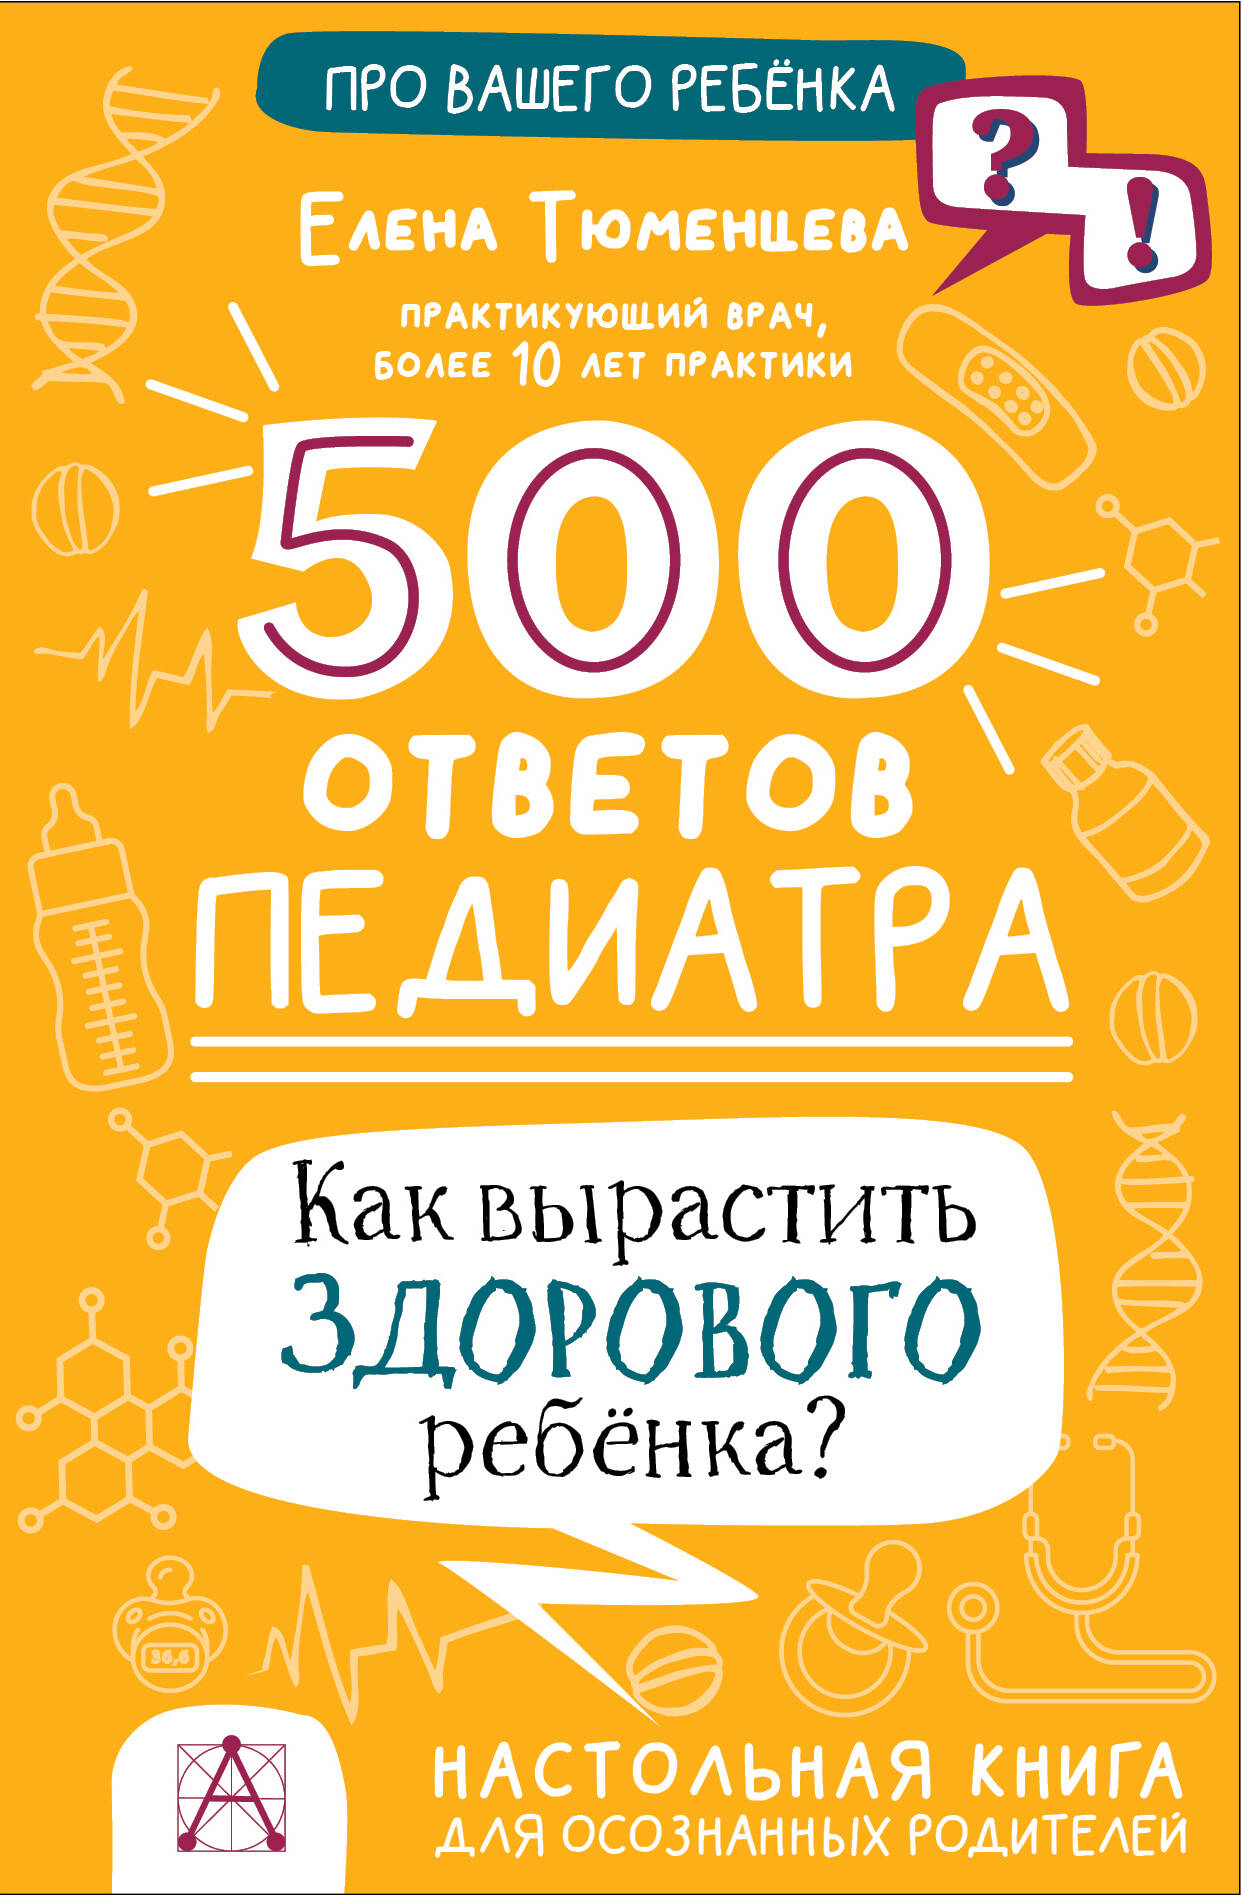 Тюменцева Елена Николаевна 500 ответов педиатра. Как вырастить здорового ребенка?